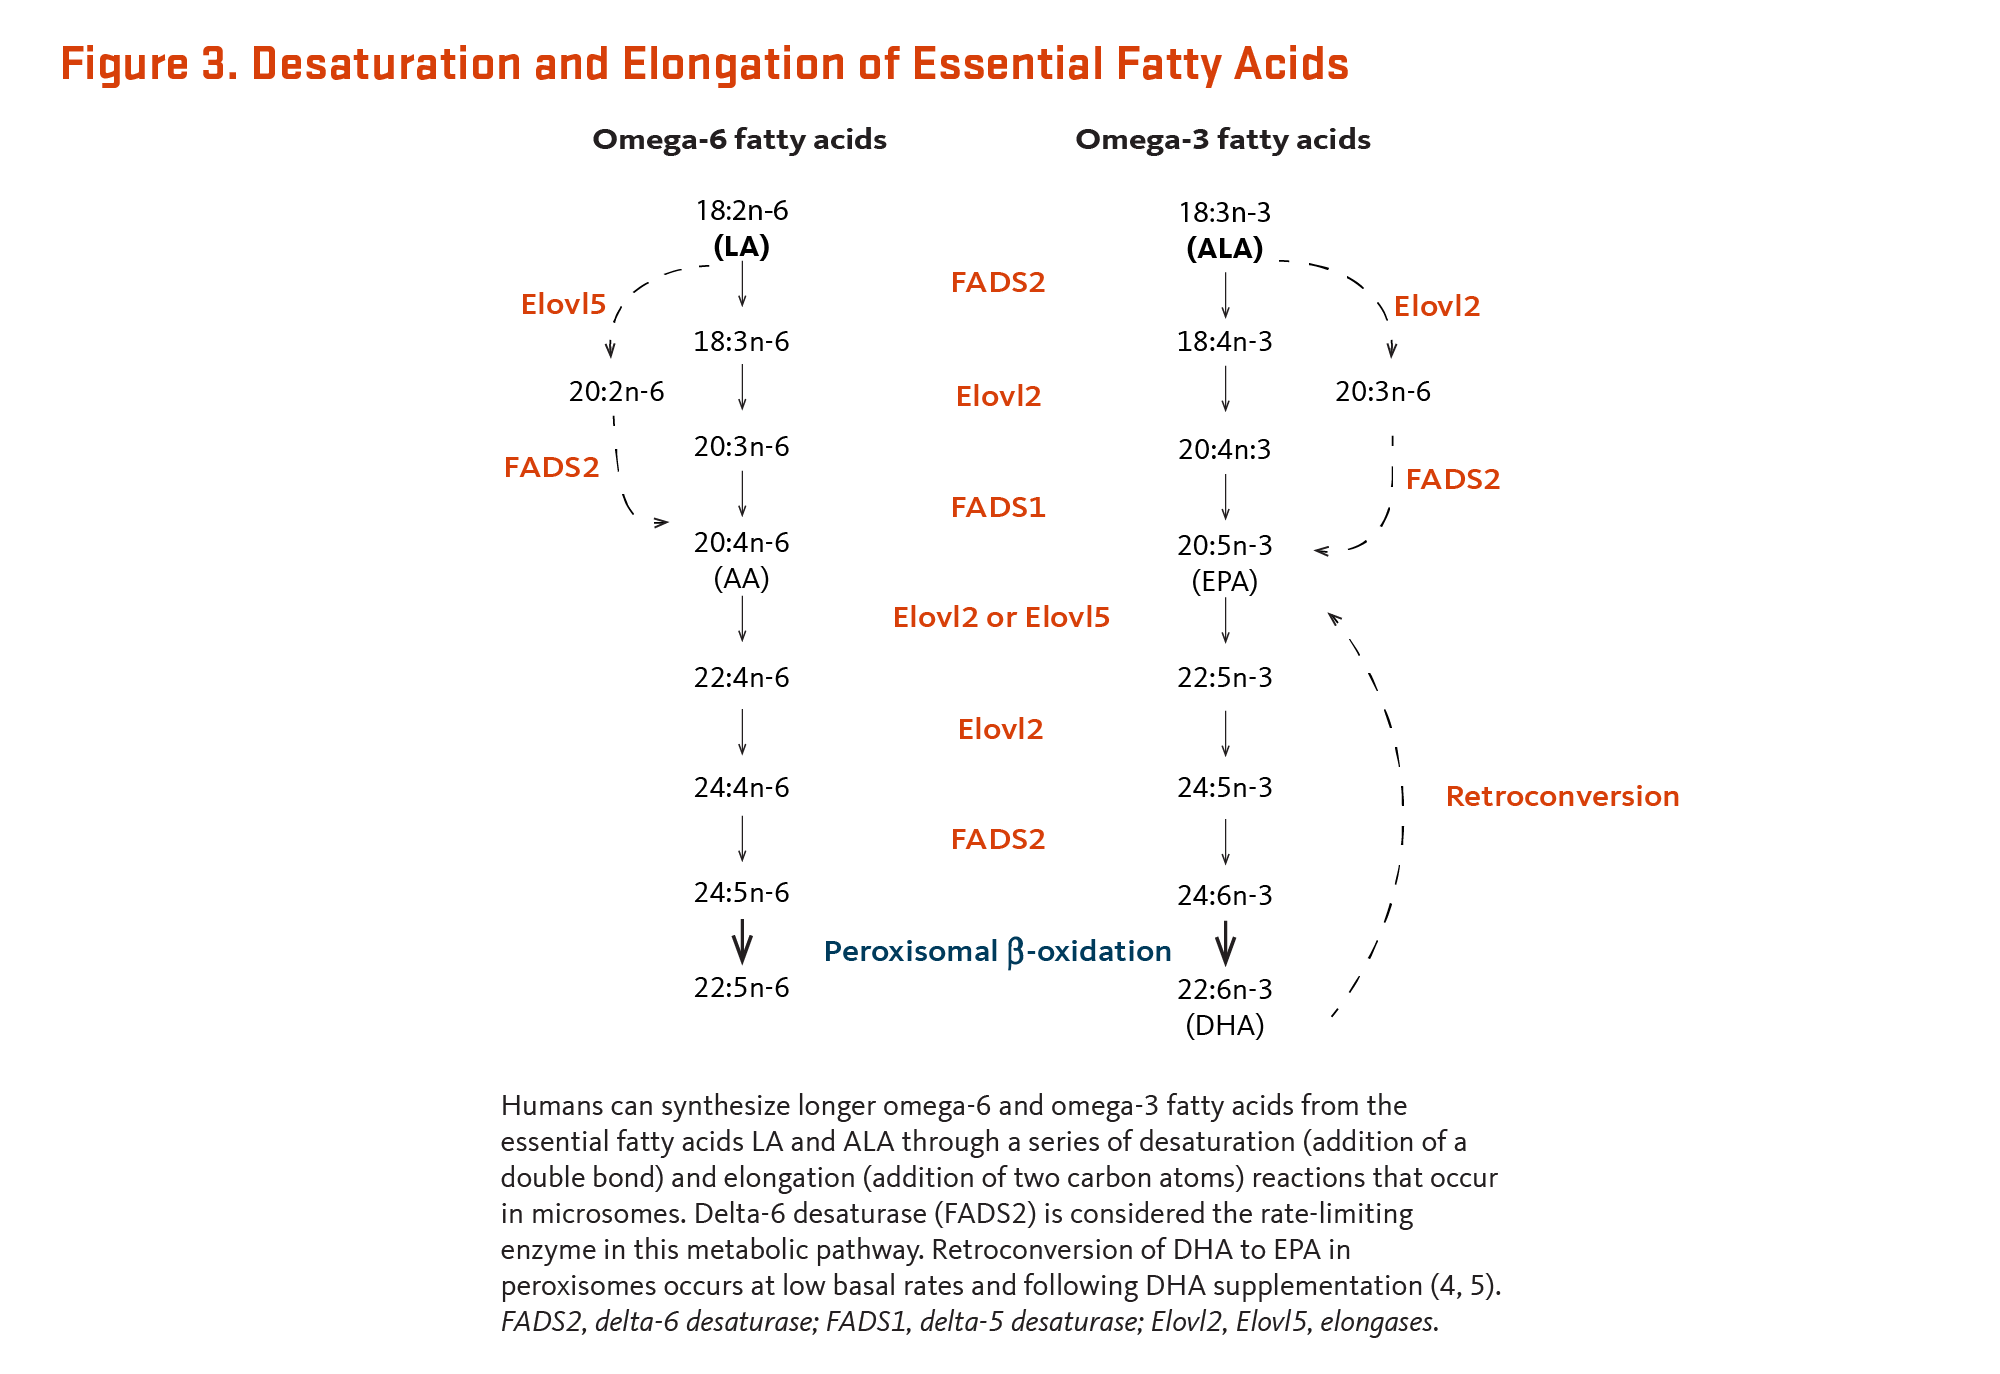 Essential fatty acids